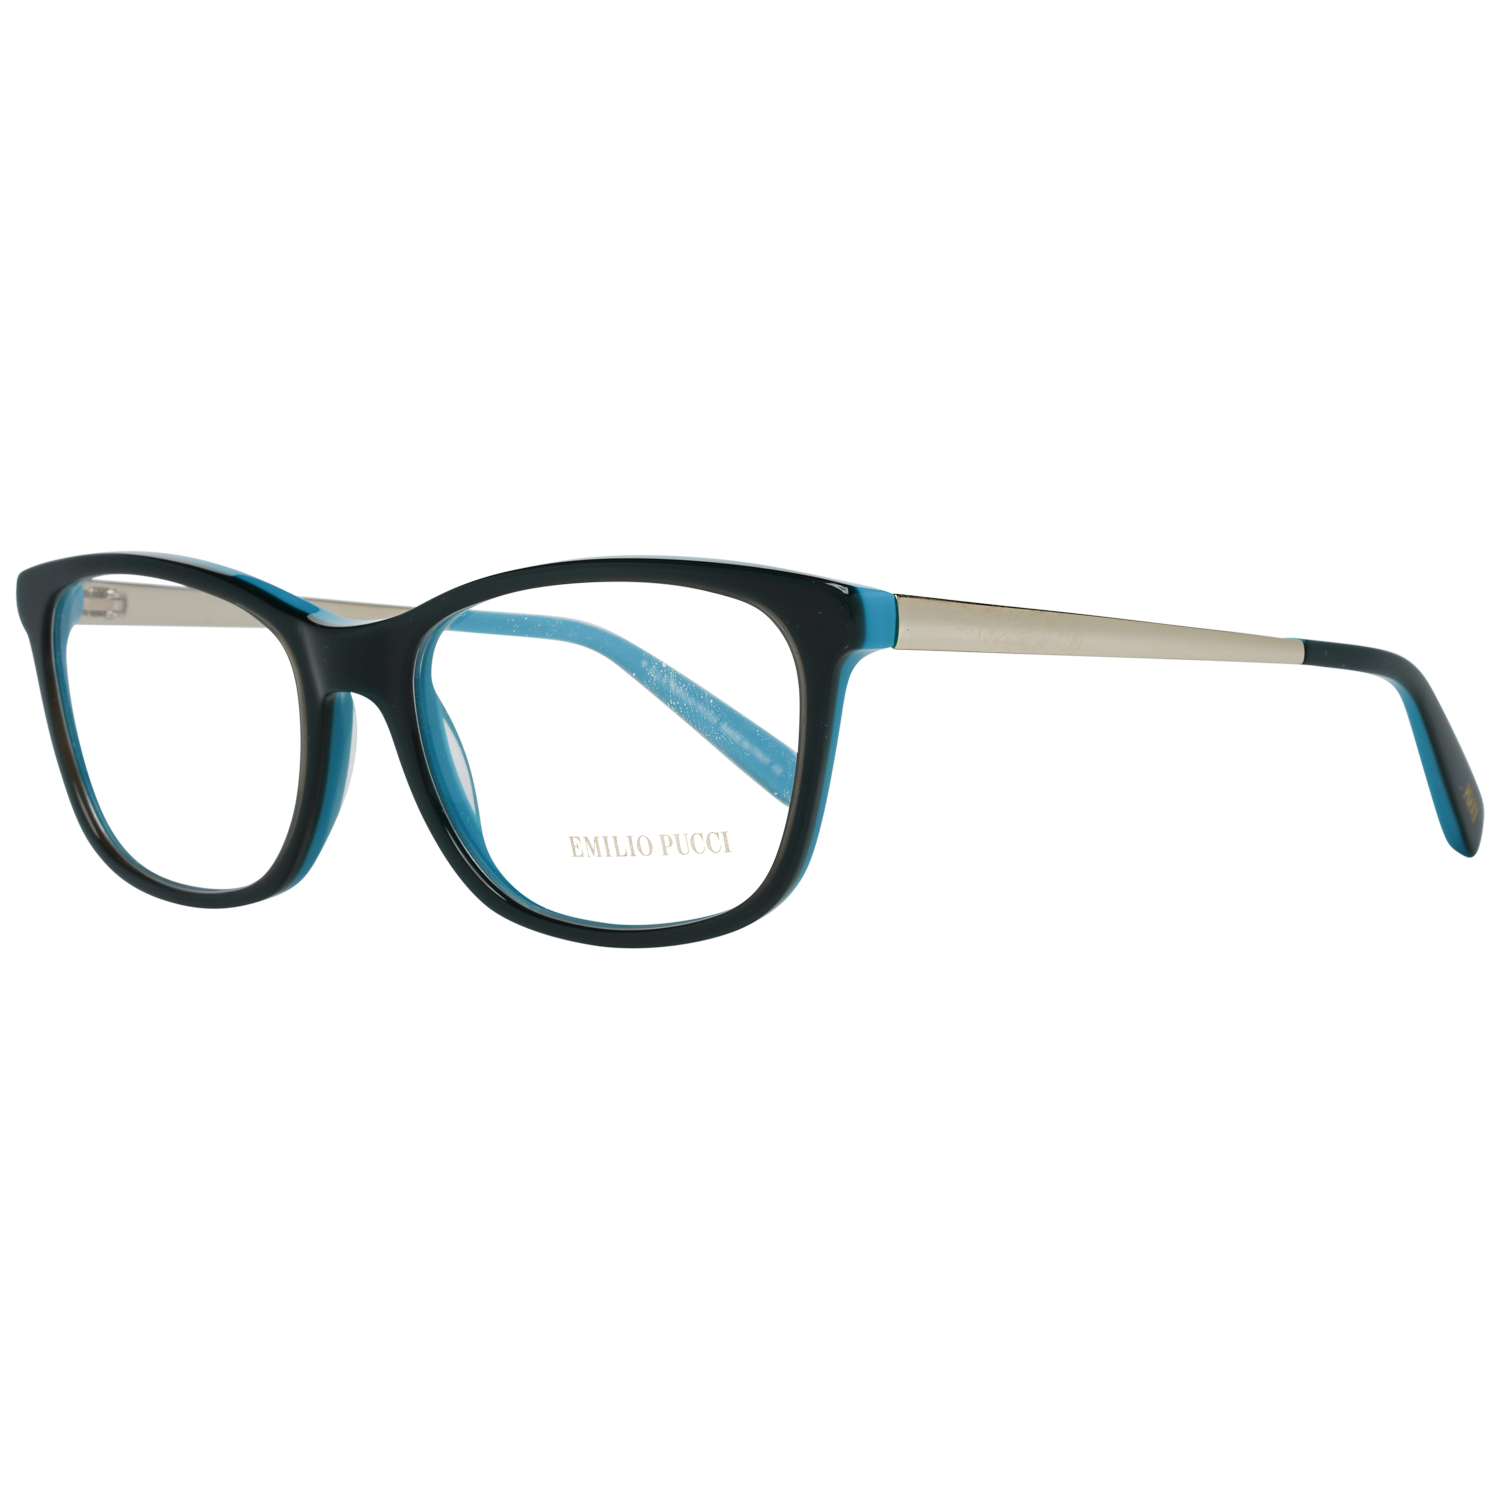 Emilio Pucci Frames Emilio Pucci Optical Frame EP5068 092 54 Eyeglasses Eyewear UK USA Australia 